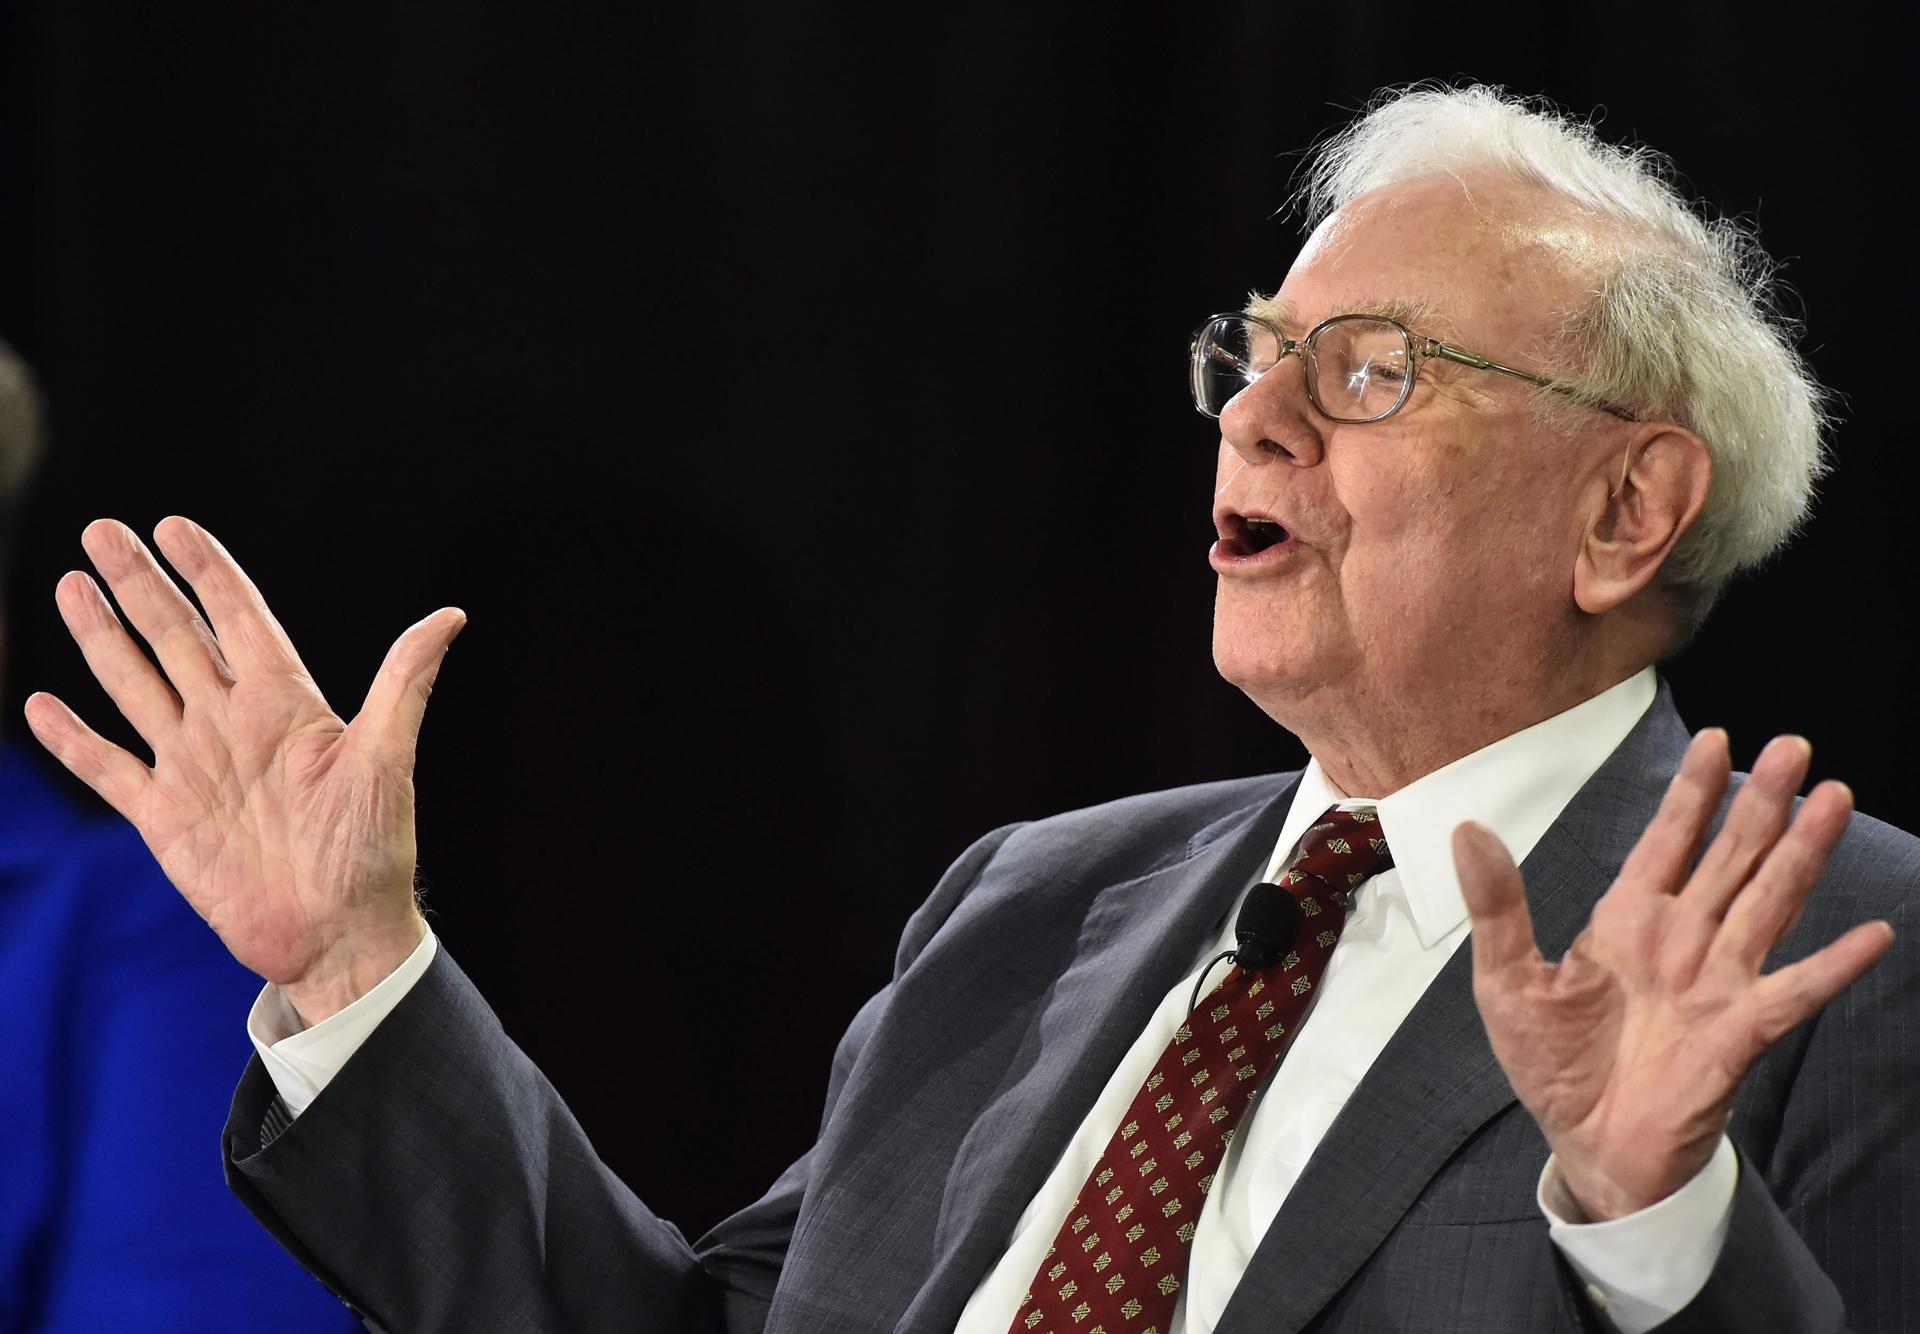 El multimillonario Warren Buffett, en una fotografía de archivo. EFE/Larry W. Smith